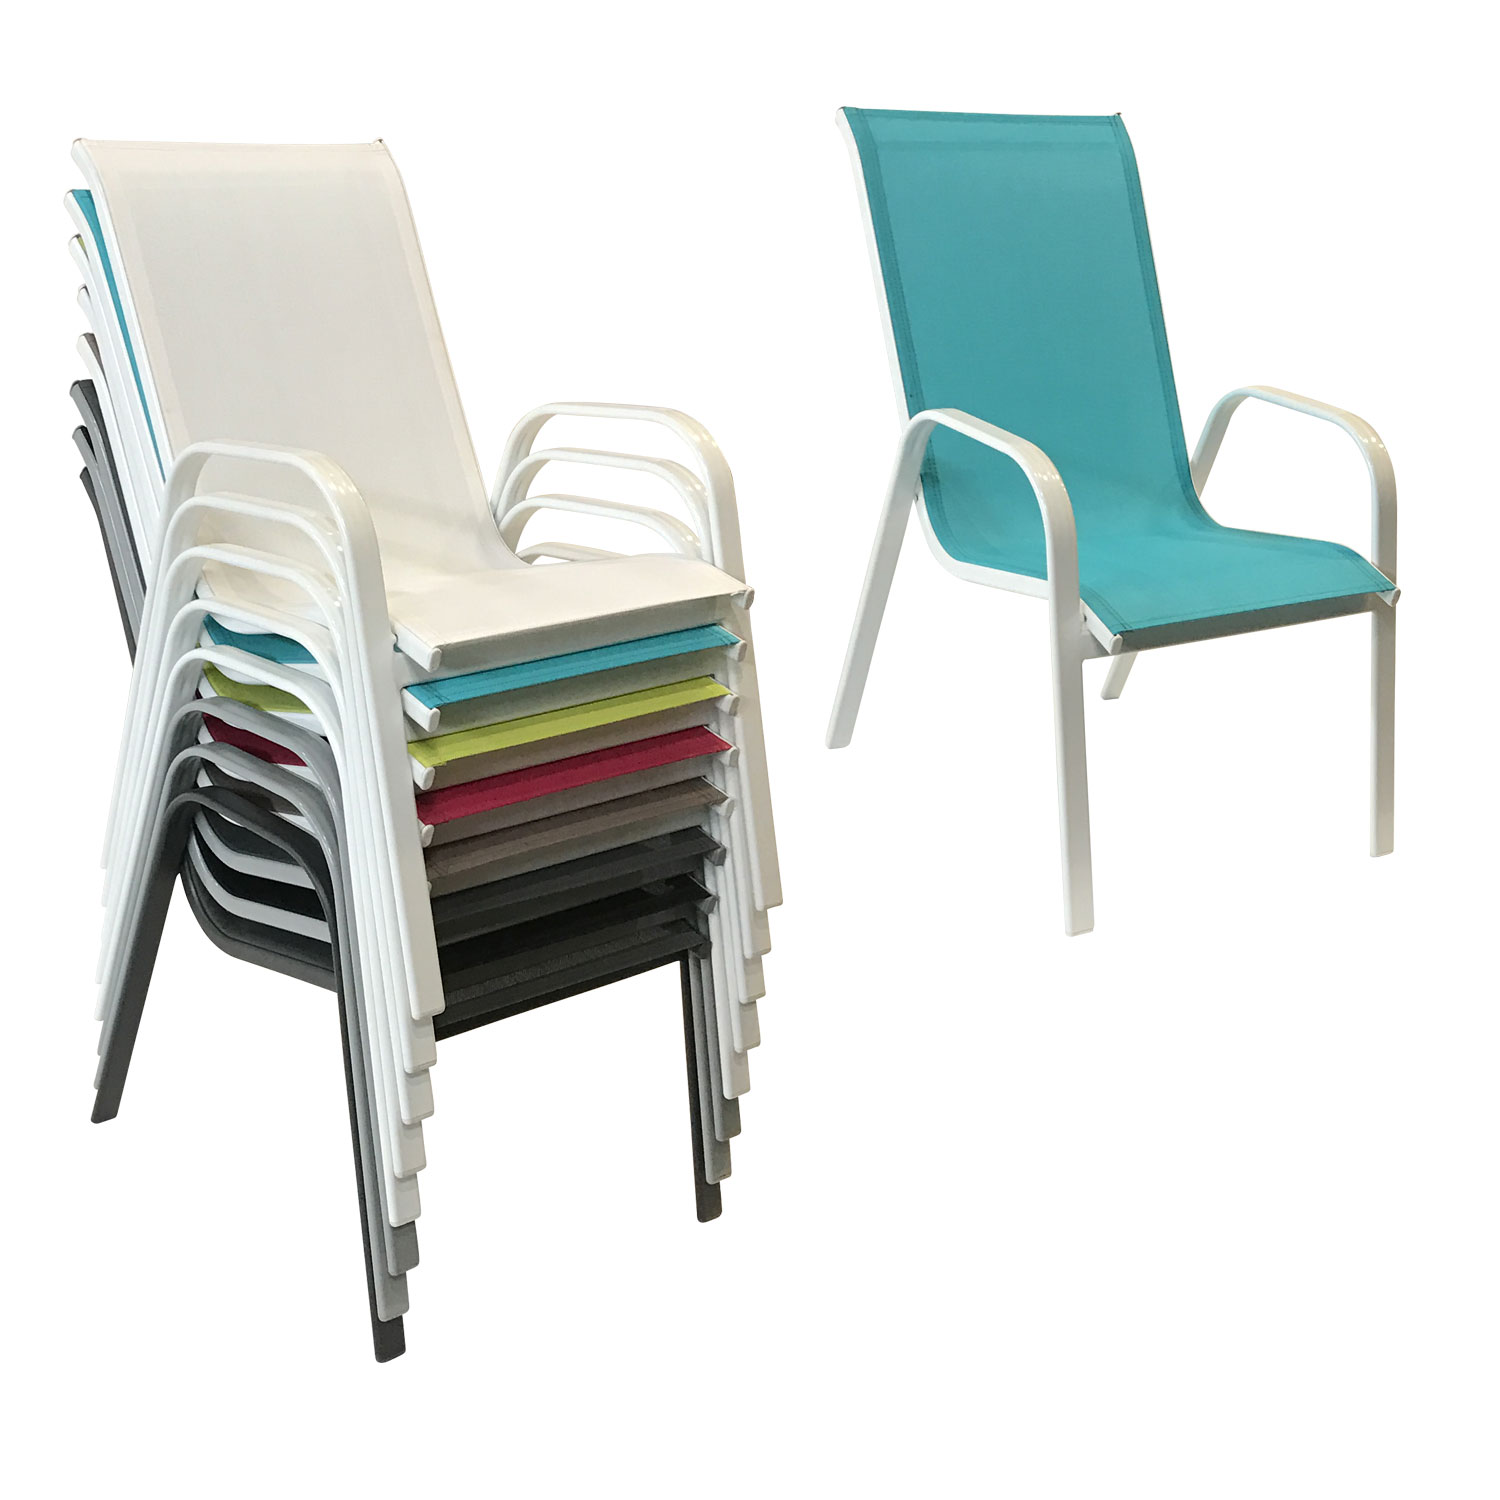 Lote de 8 sillas MARBELLA en textileno azul - aluminio blanco